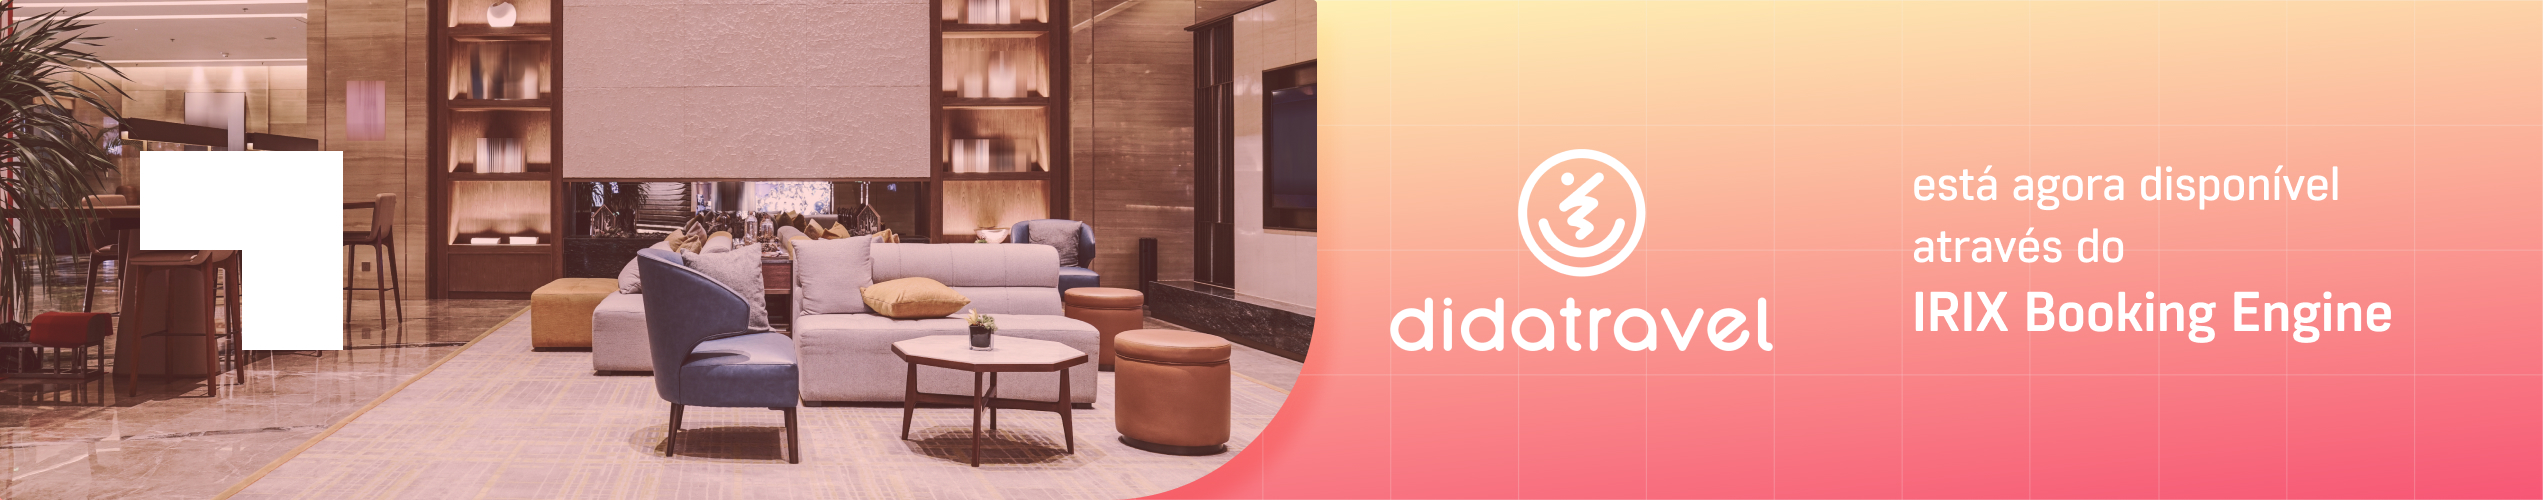 DidaTravel está agora disponível através do IRIX Booking Engine